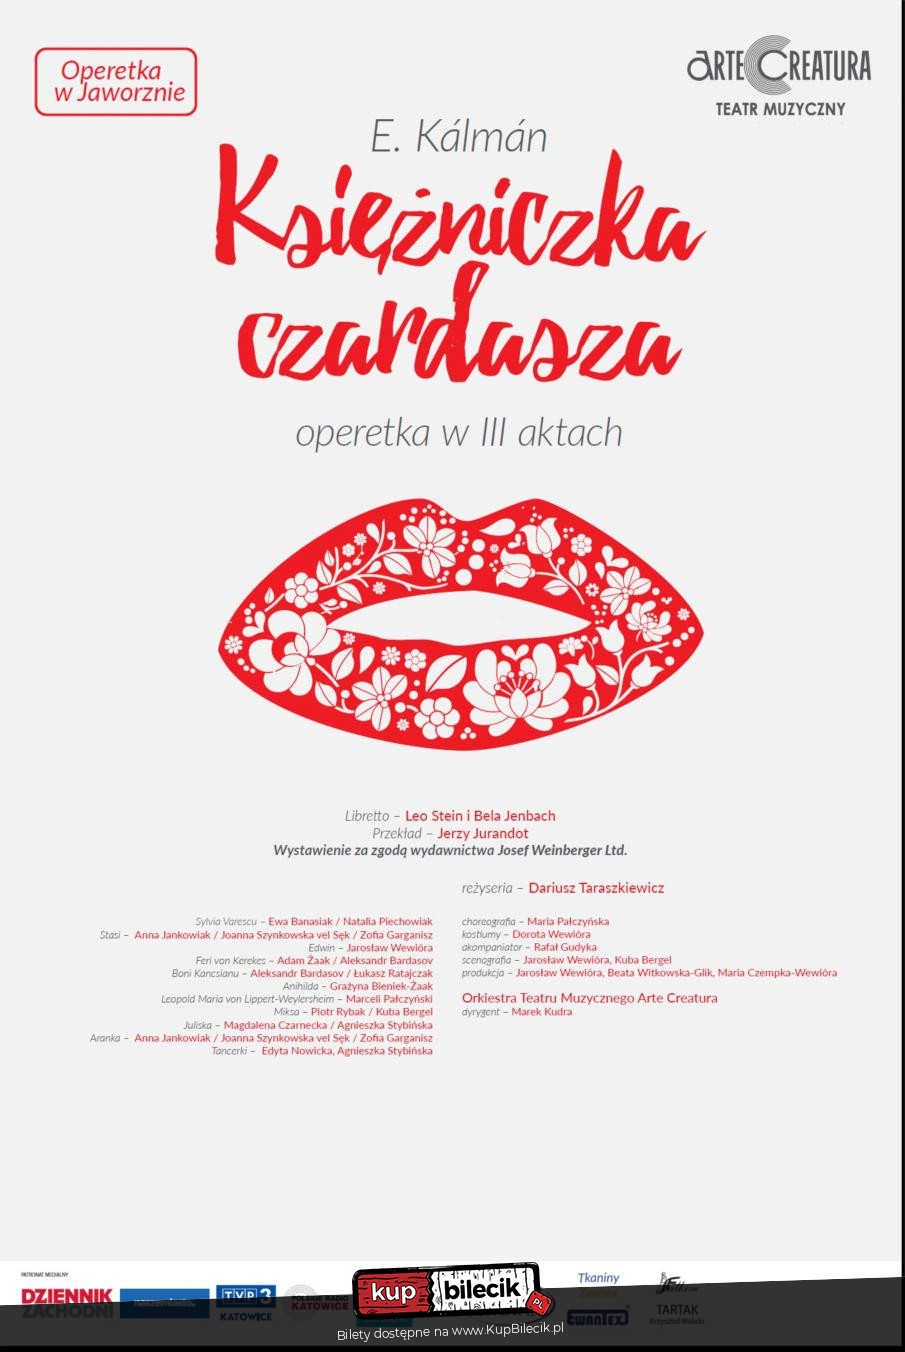 Plakat Księżniczka czardasza I.Kalman operetka - Arte Creatura Teatr Muzyczny 132303